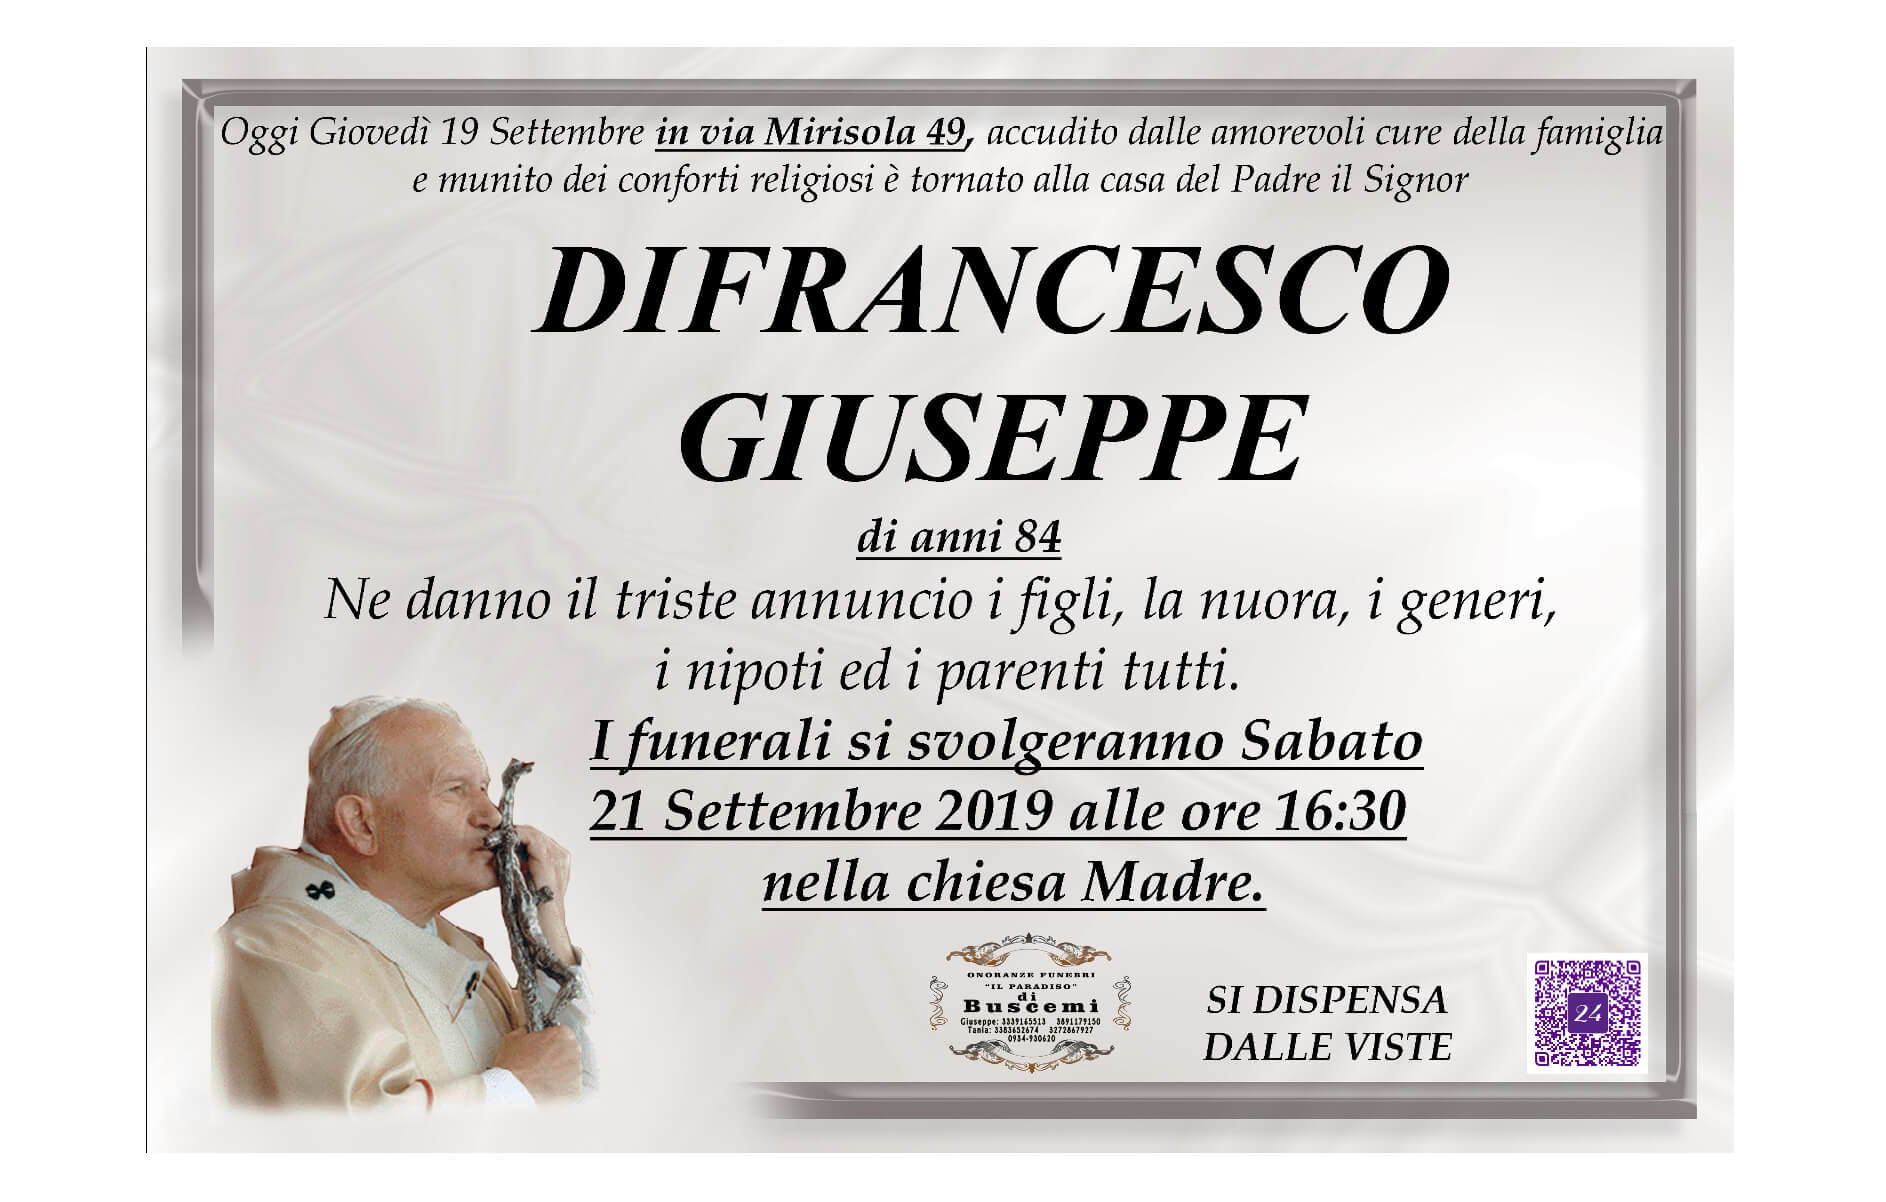 Giuseppe Difrancesco